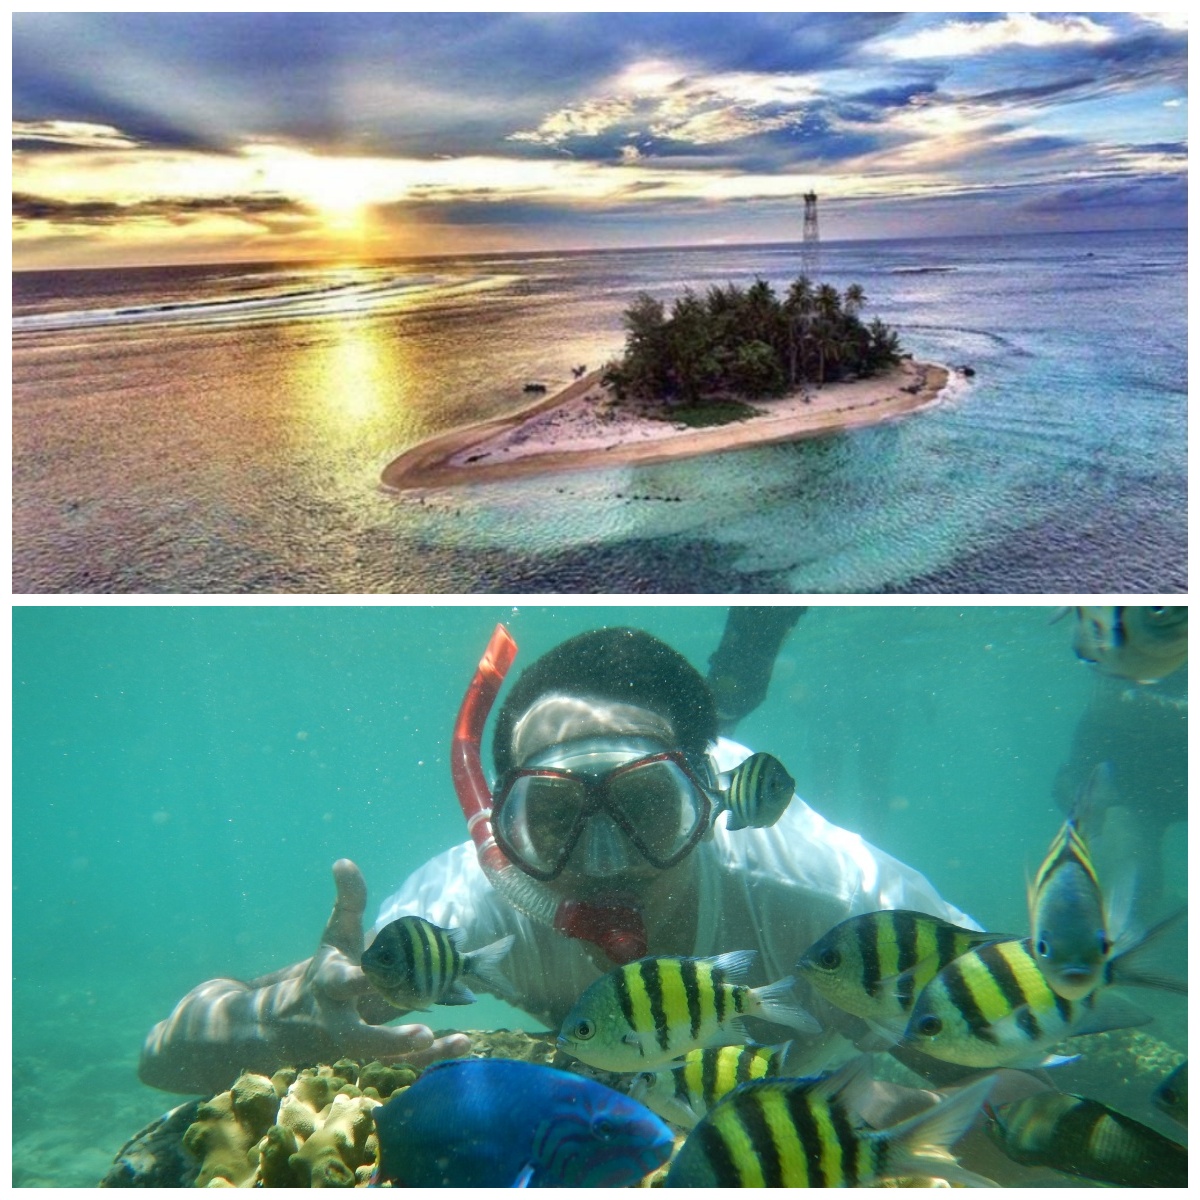 Serunya Snorkeling di Pulau Tikus, Menjelajahi Keindahan Bawah Laut Bengkulu